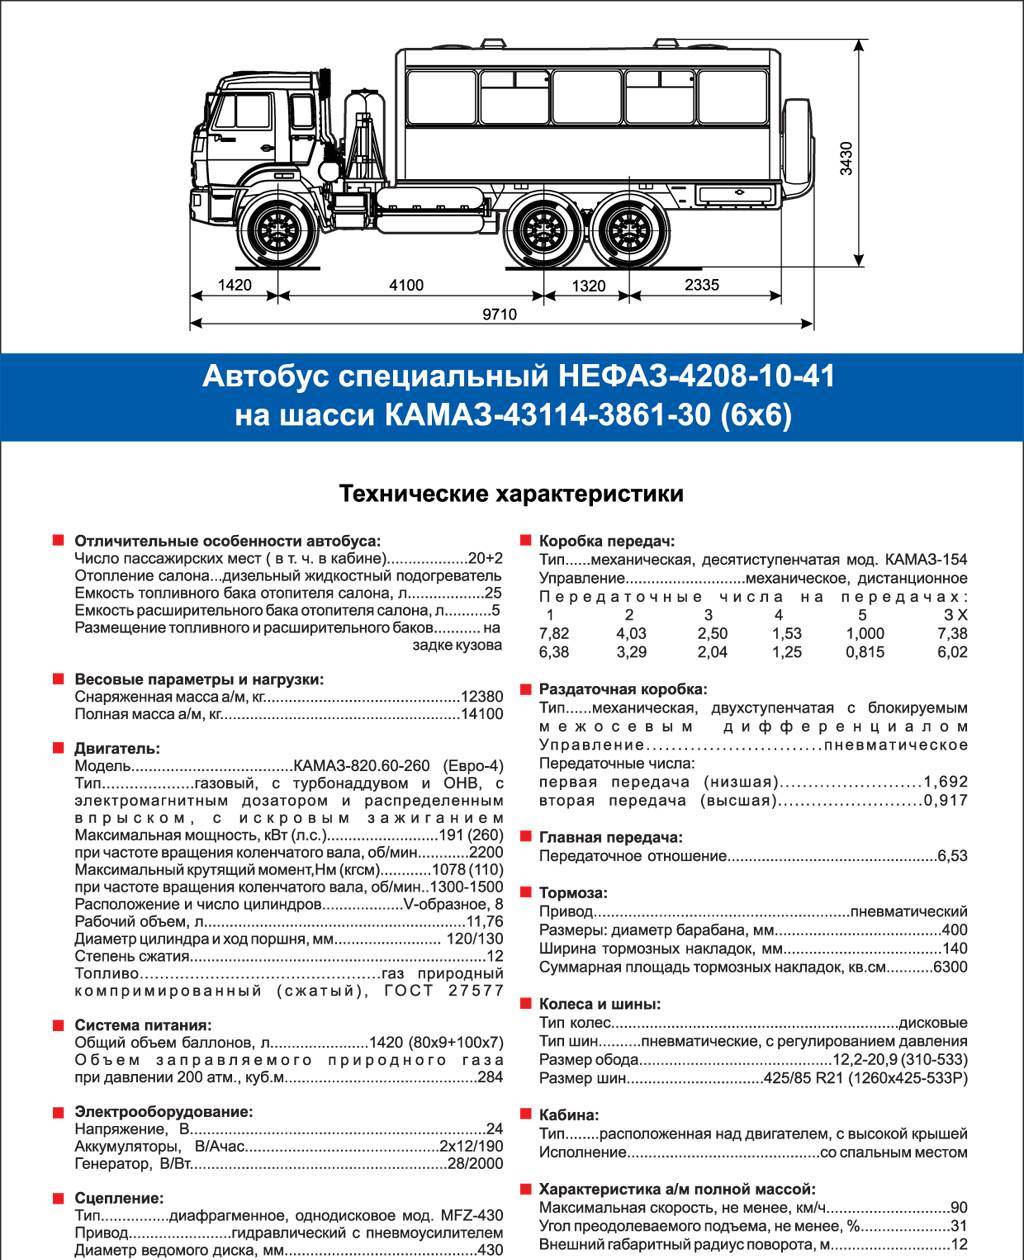 Камаз 5320 - технические характеристики, плюсы и минусы, двигатель, размеры и другое